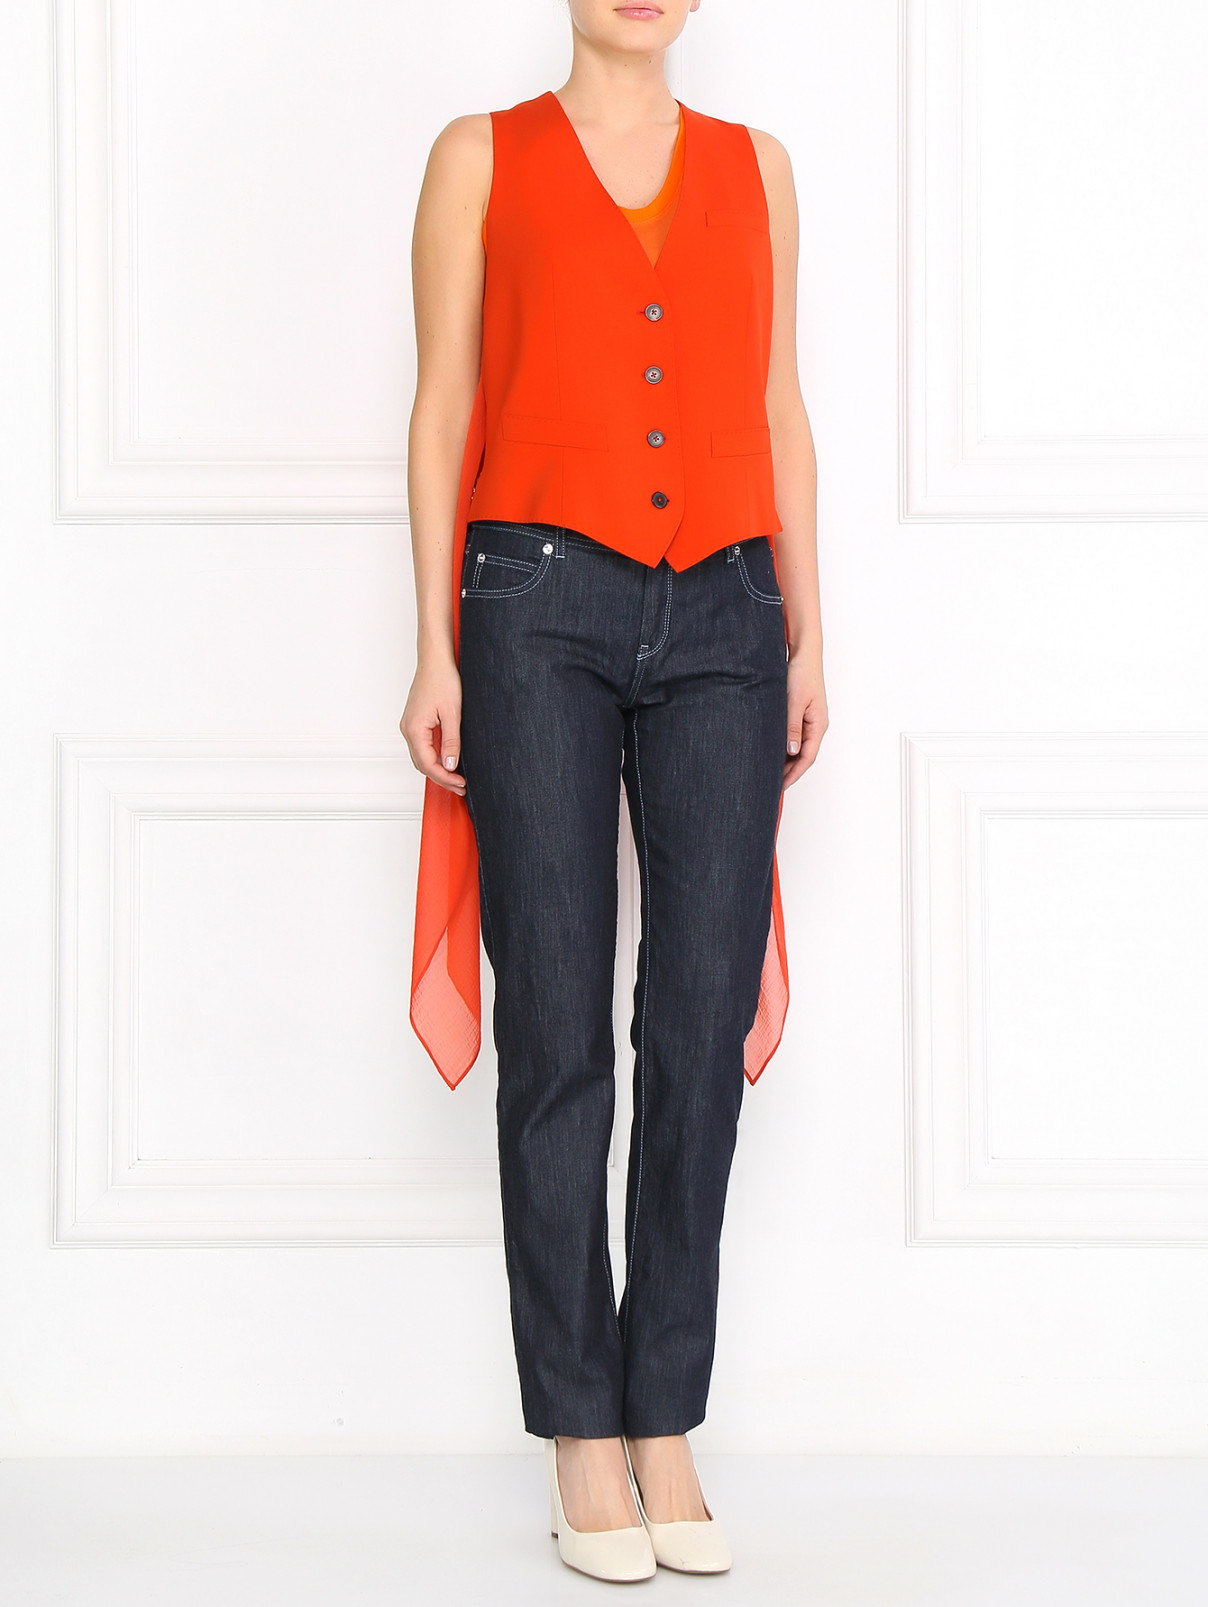 Жилет из шерсти со шлейфом Jean Paul Gaultier  –  Модель Общий вид  – Цвет:  Оранжевый